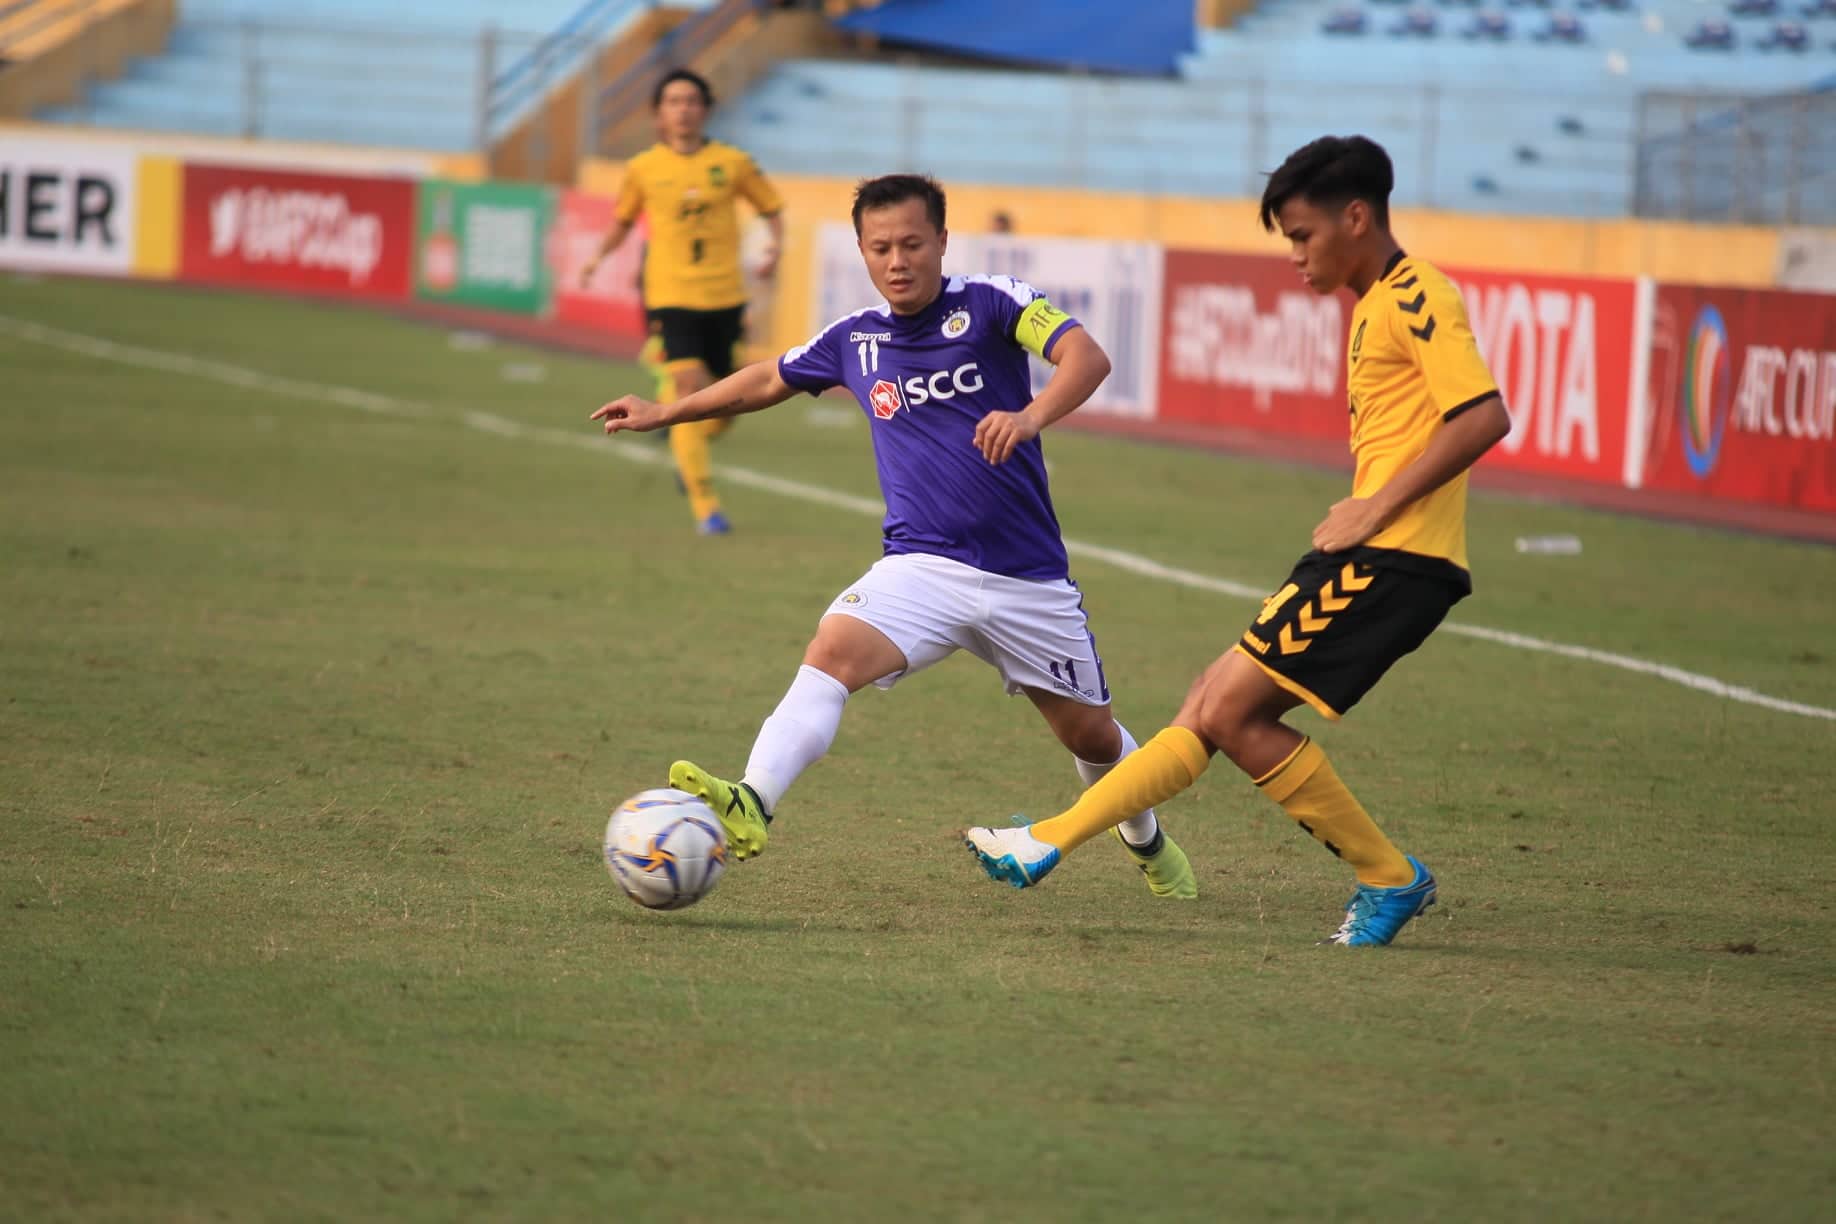 Giành vé vào bán kết AFC Cup, HLV Chu Đình Nghiêm vẫn chưa hài lòng